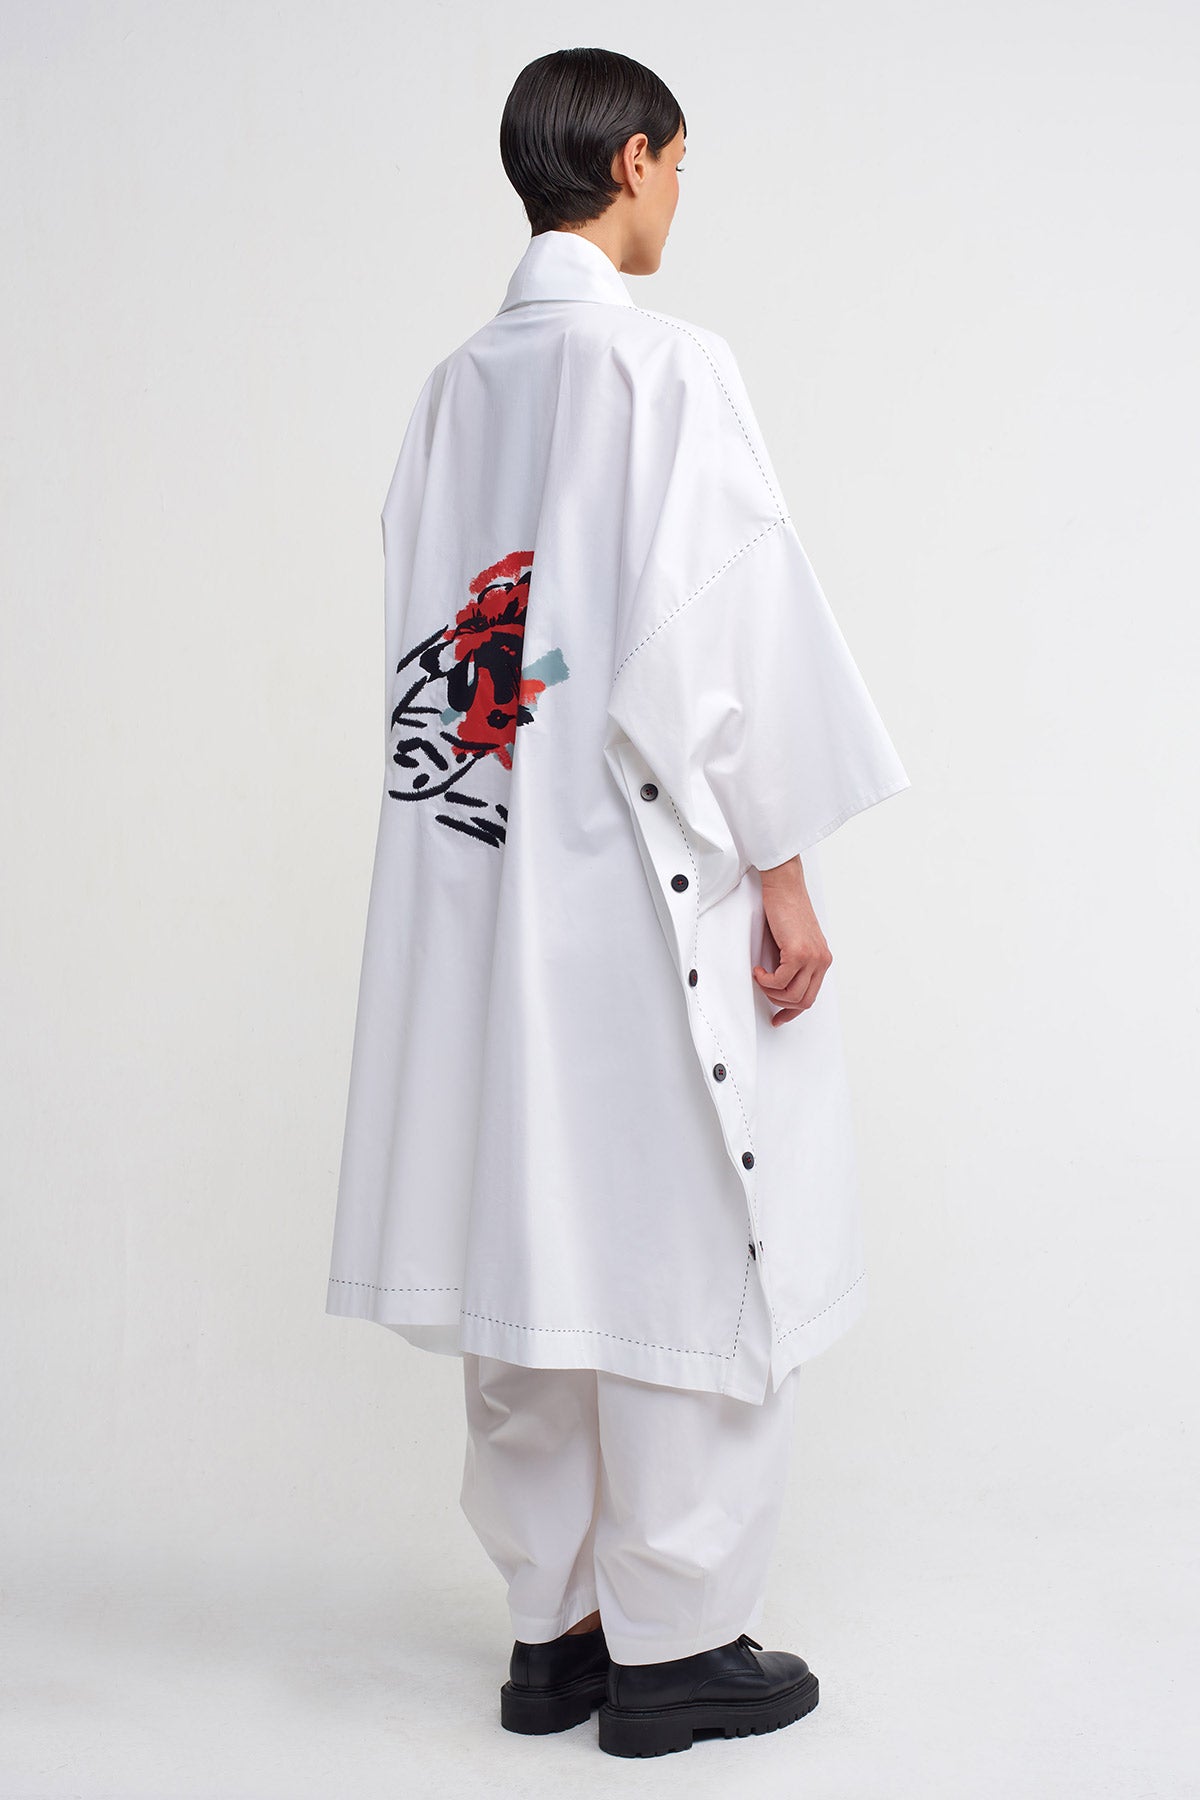 Beyaz / Siyah Baskı Ve Nakış Detaylı Kimono-Y245015013